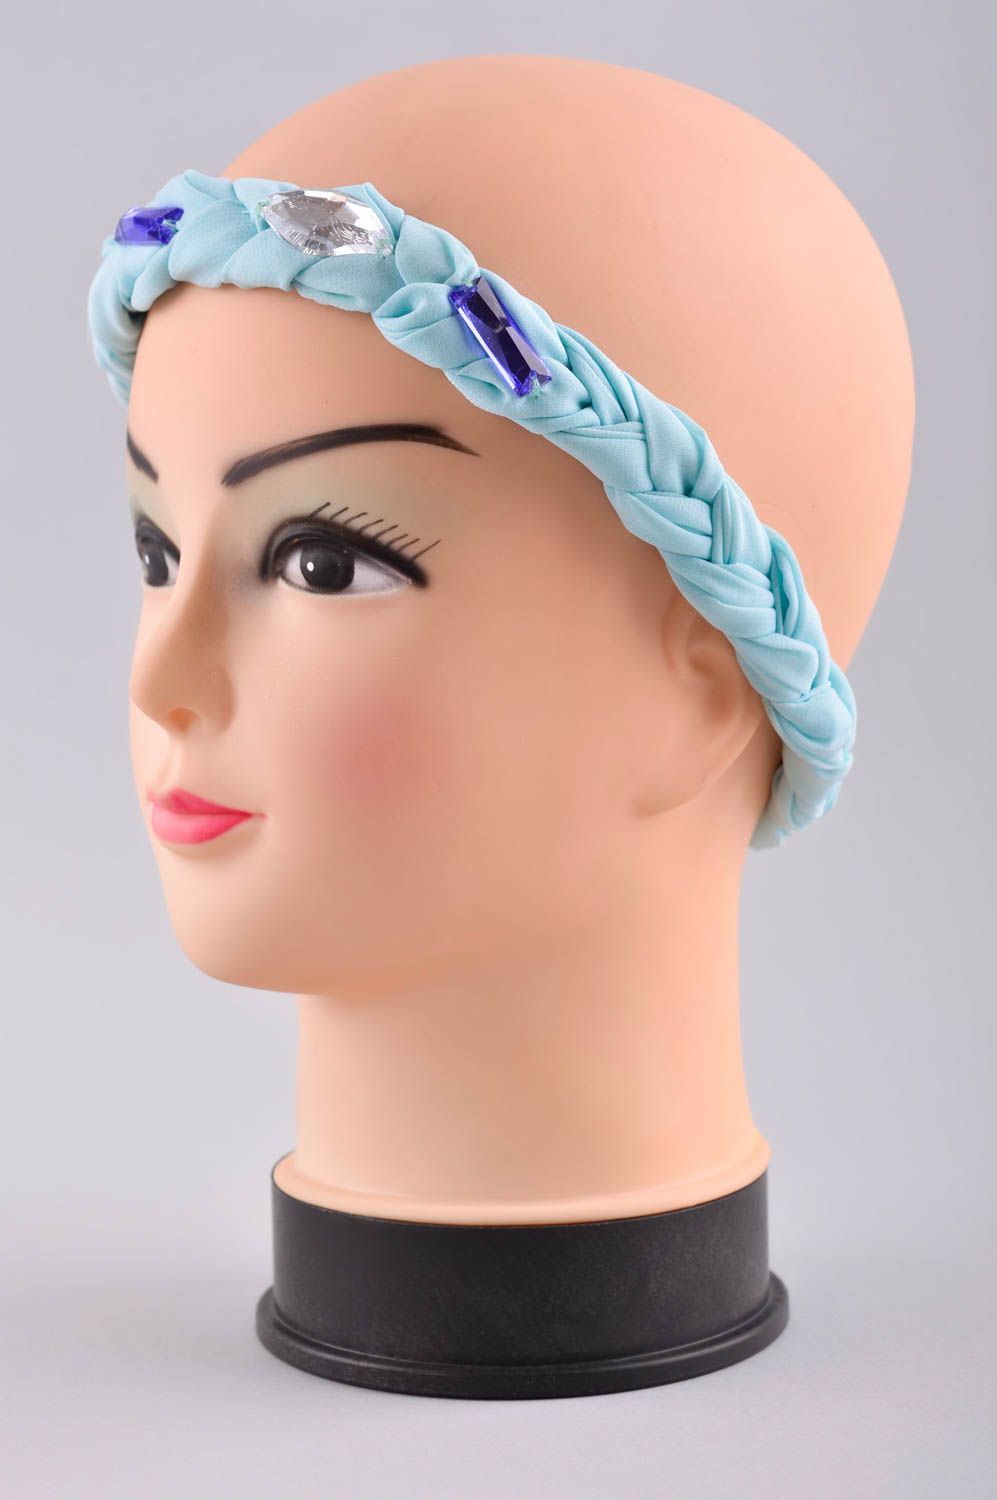 Полоска для волос ручной работы аксессуар для прически женский аксессуар голубой фото 2